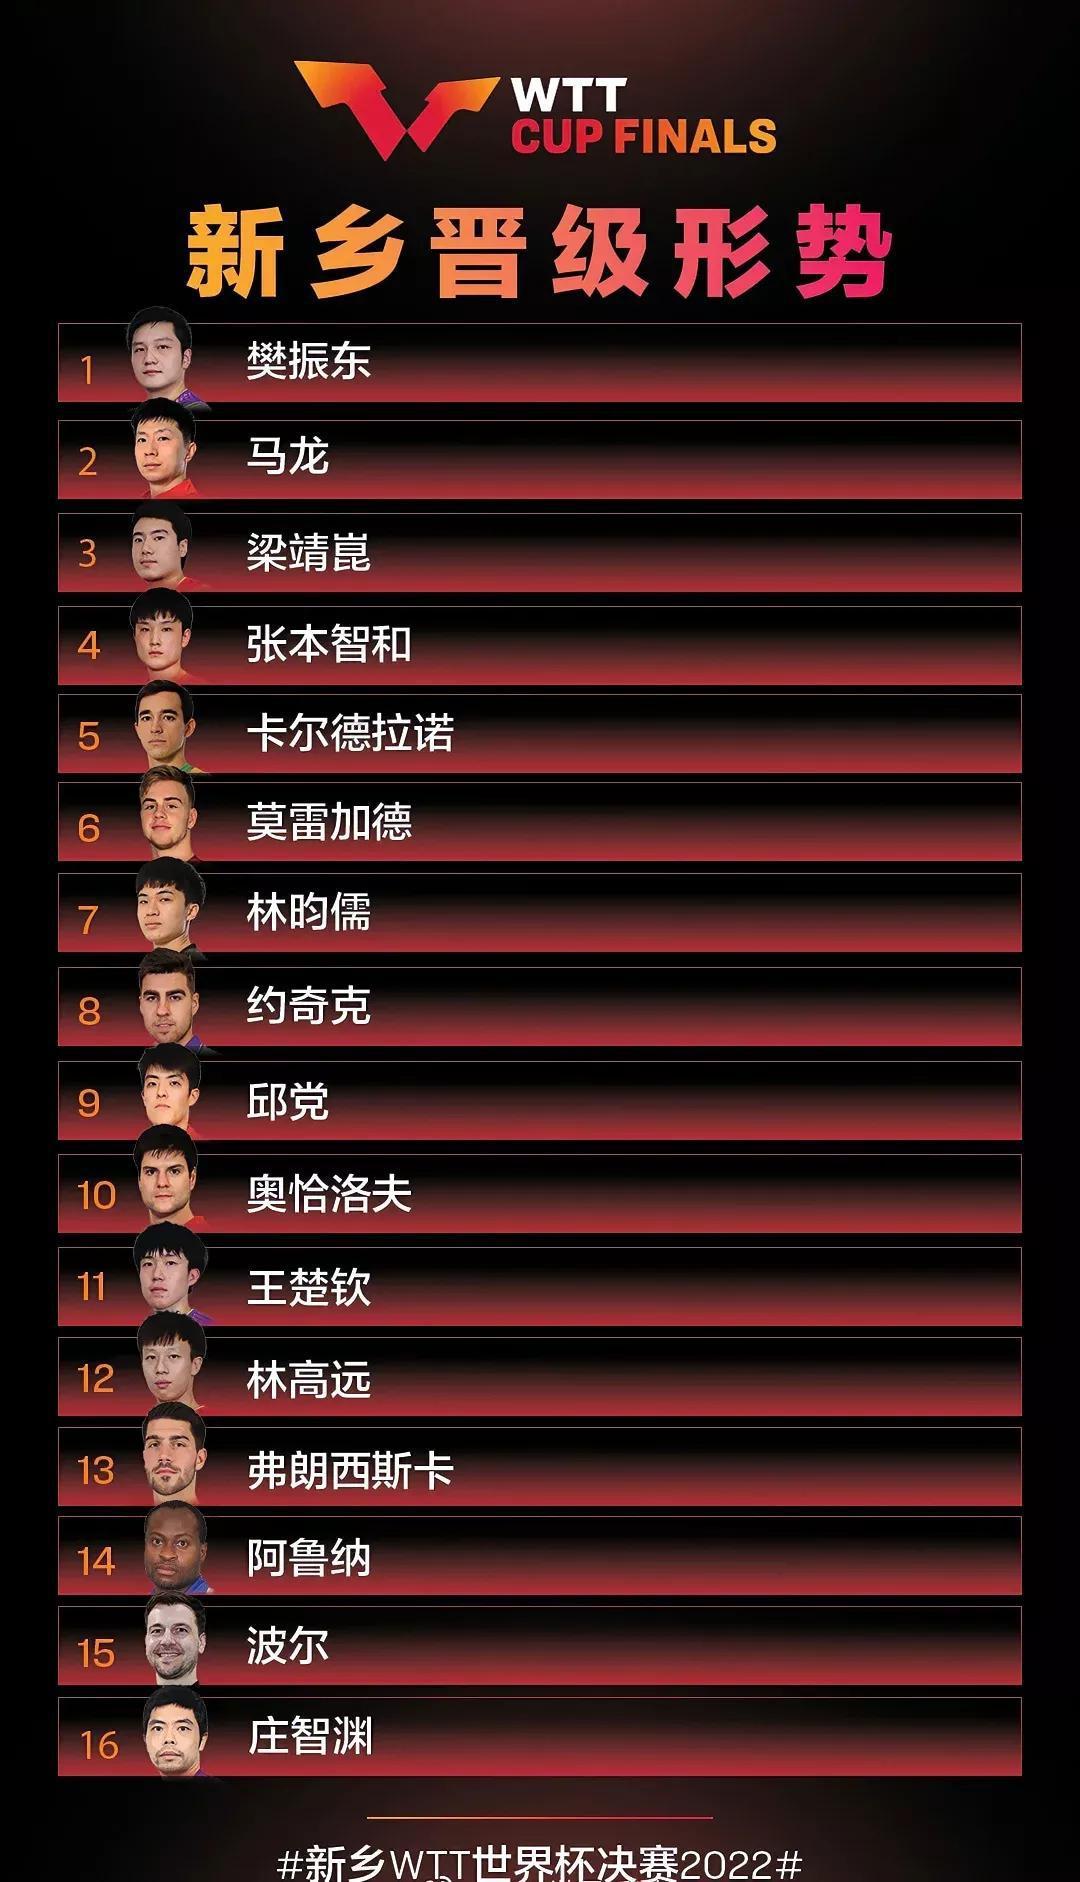 WTT乒乓球世界杯16人参赛，11人来自中国，这对女乒是好事吗？(1)